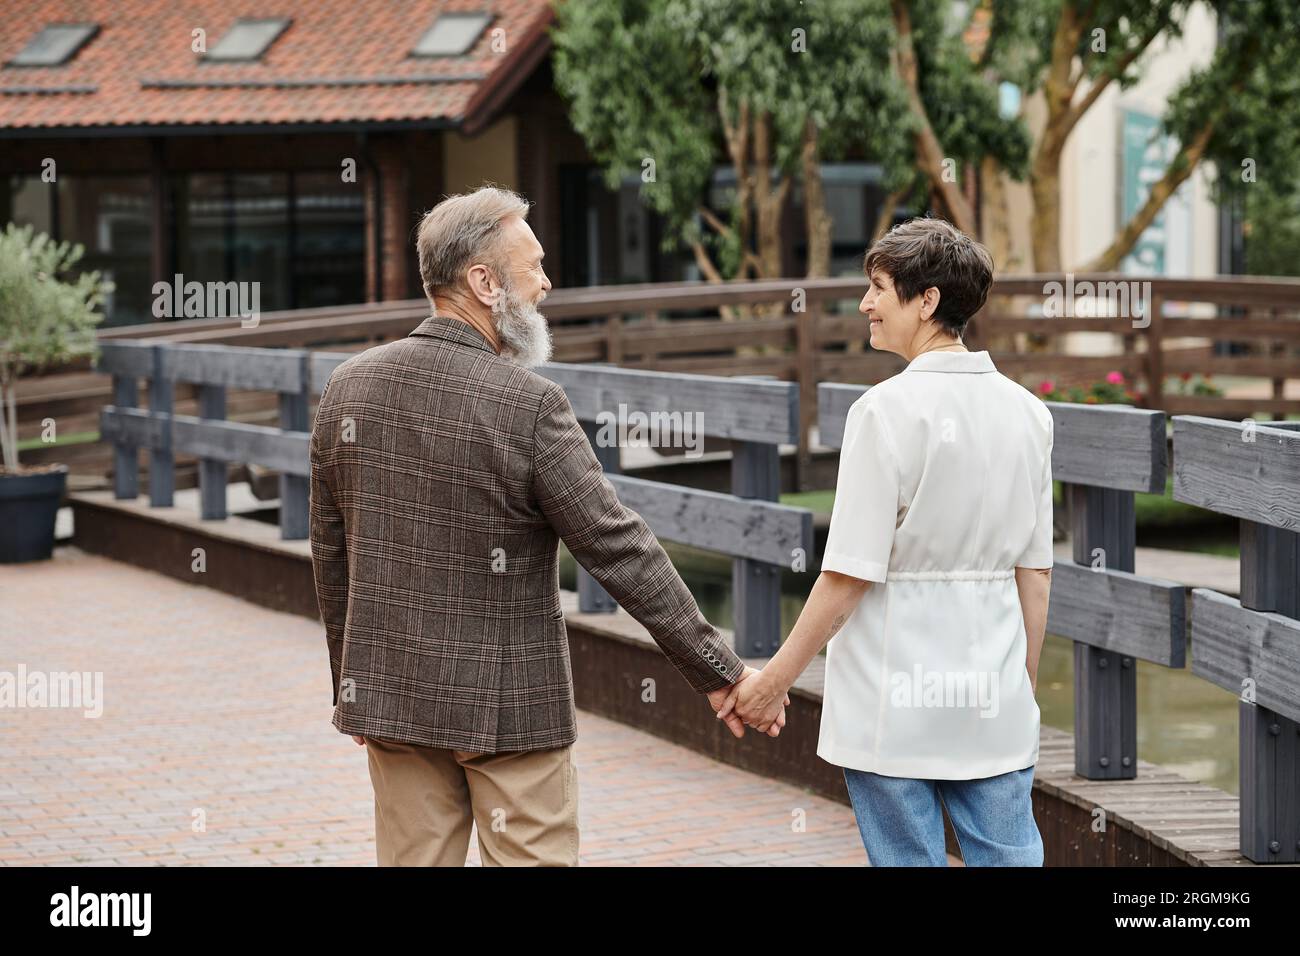 donna felice e uomo barbuto che si tiene per mano, guardarsi l'un l'altro, appuntamento, romanticismo, coppia anziana Foto Stock